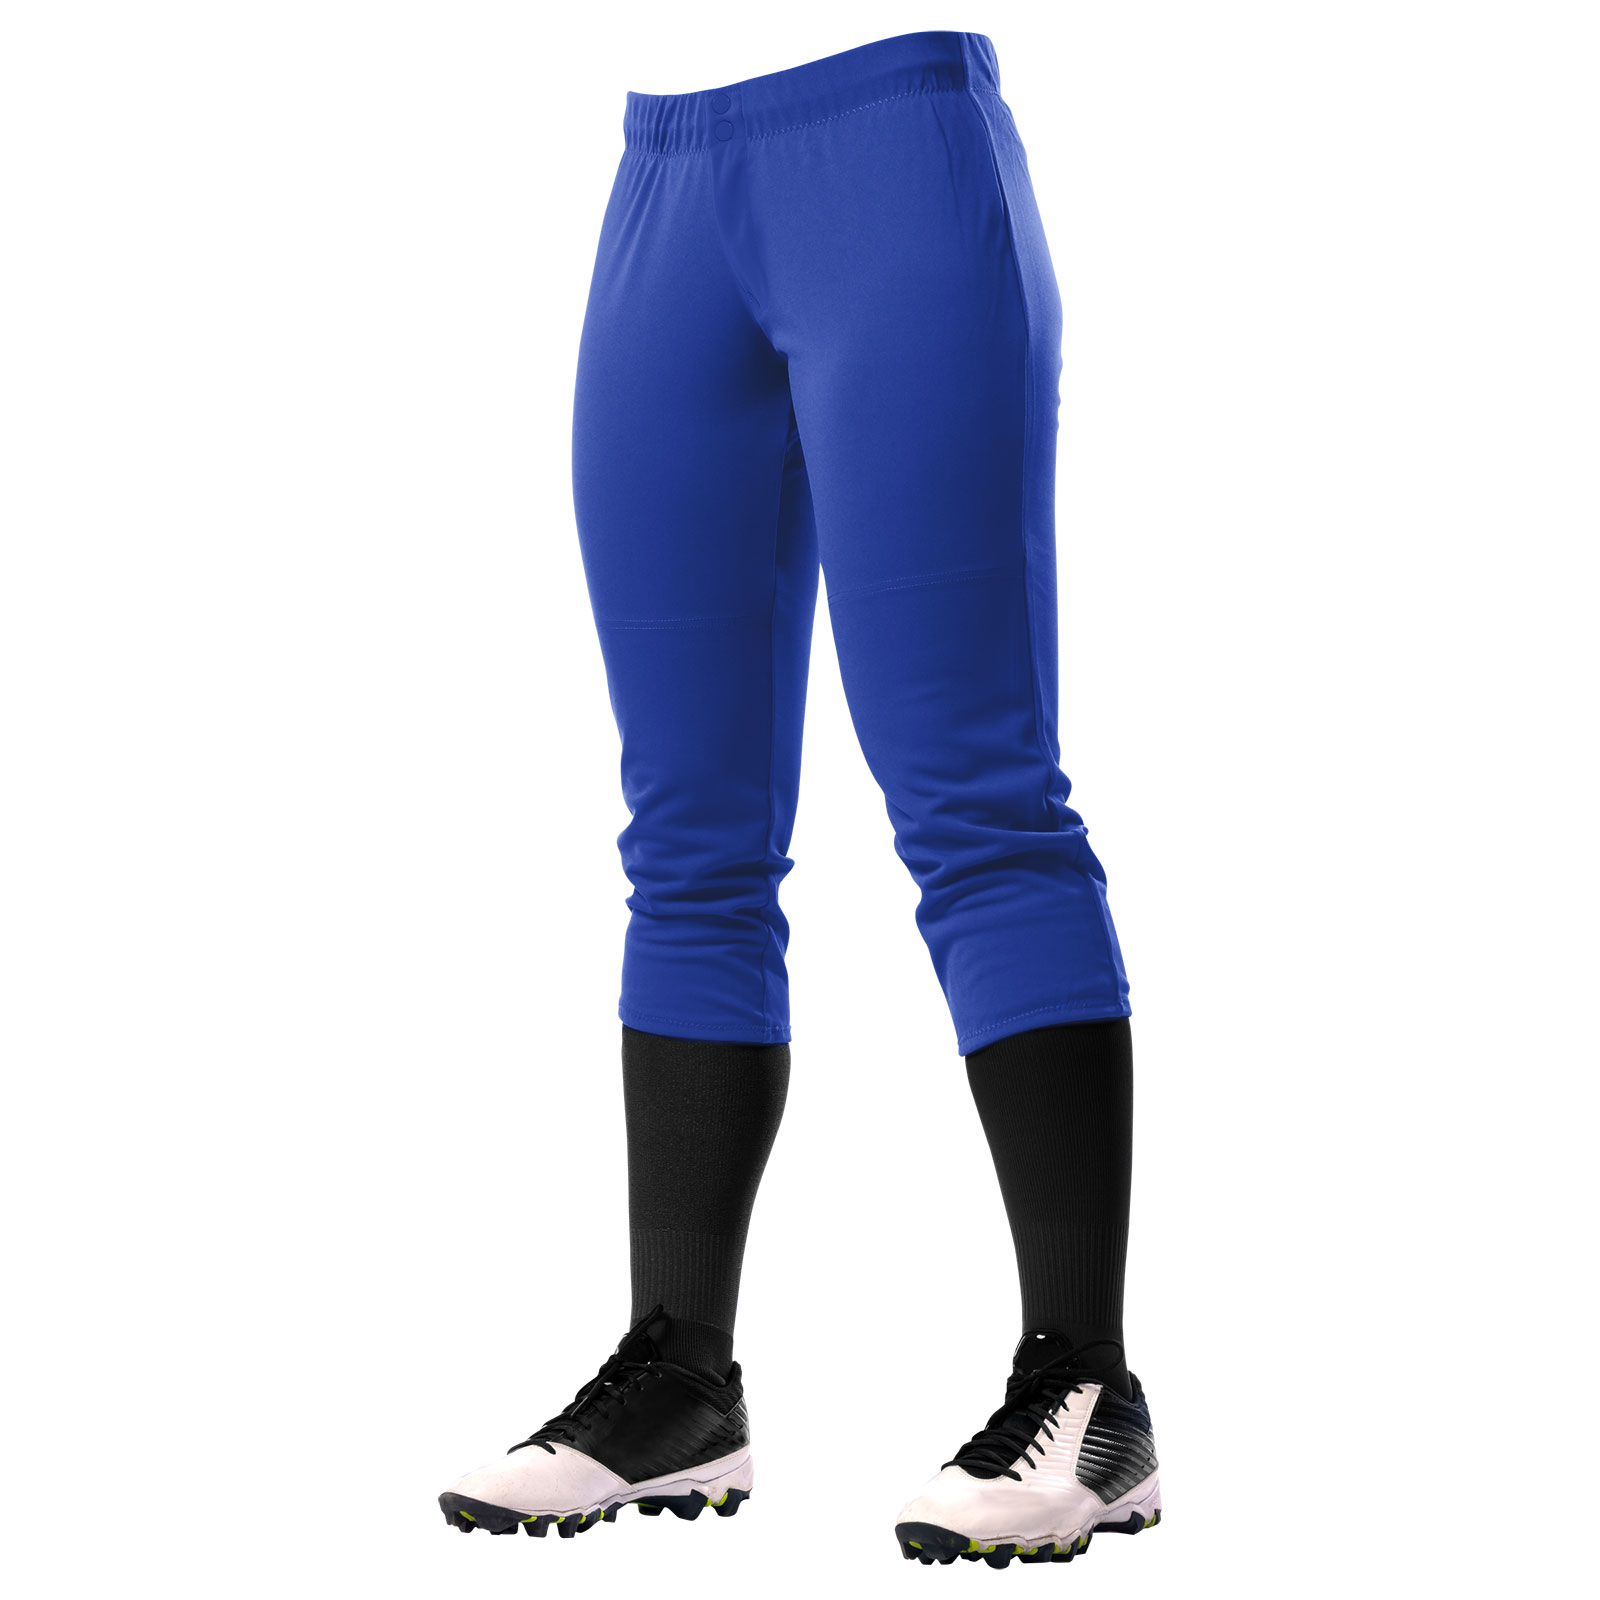 Fireball Low-Rise Fastpitch Softball Pants, Women's 2X-Large, Royal 